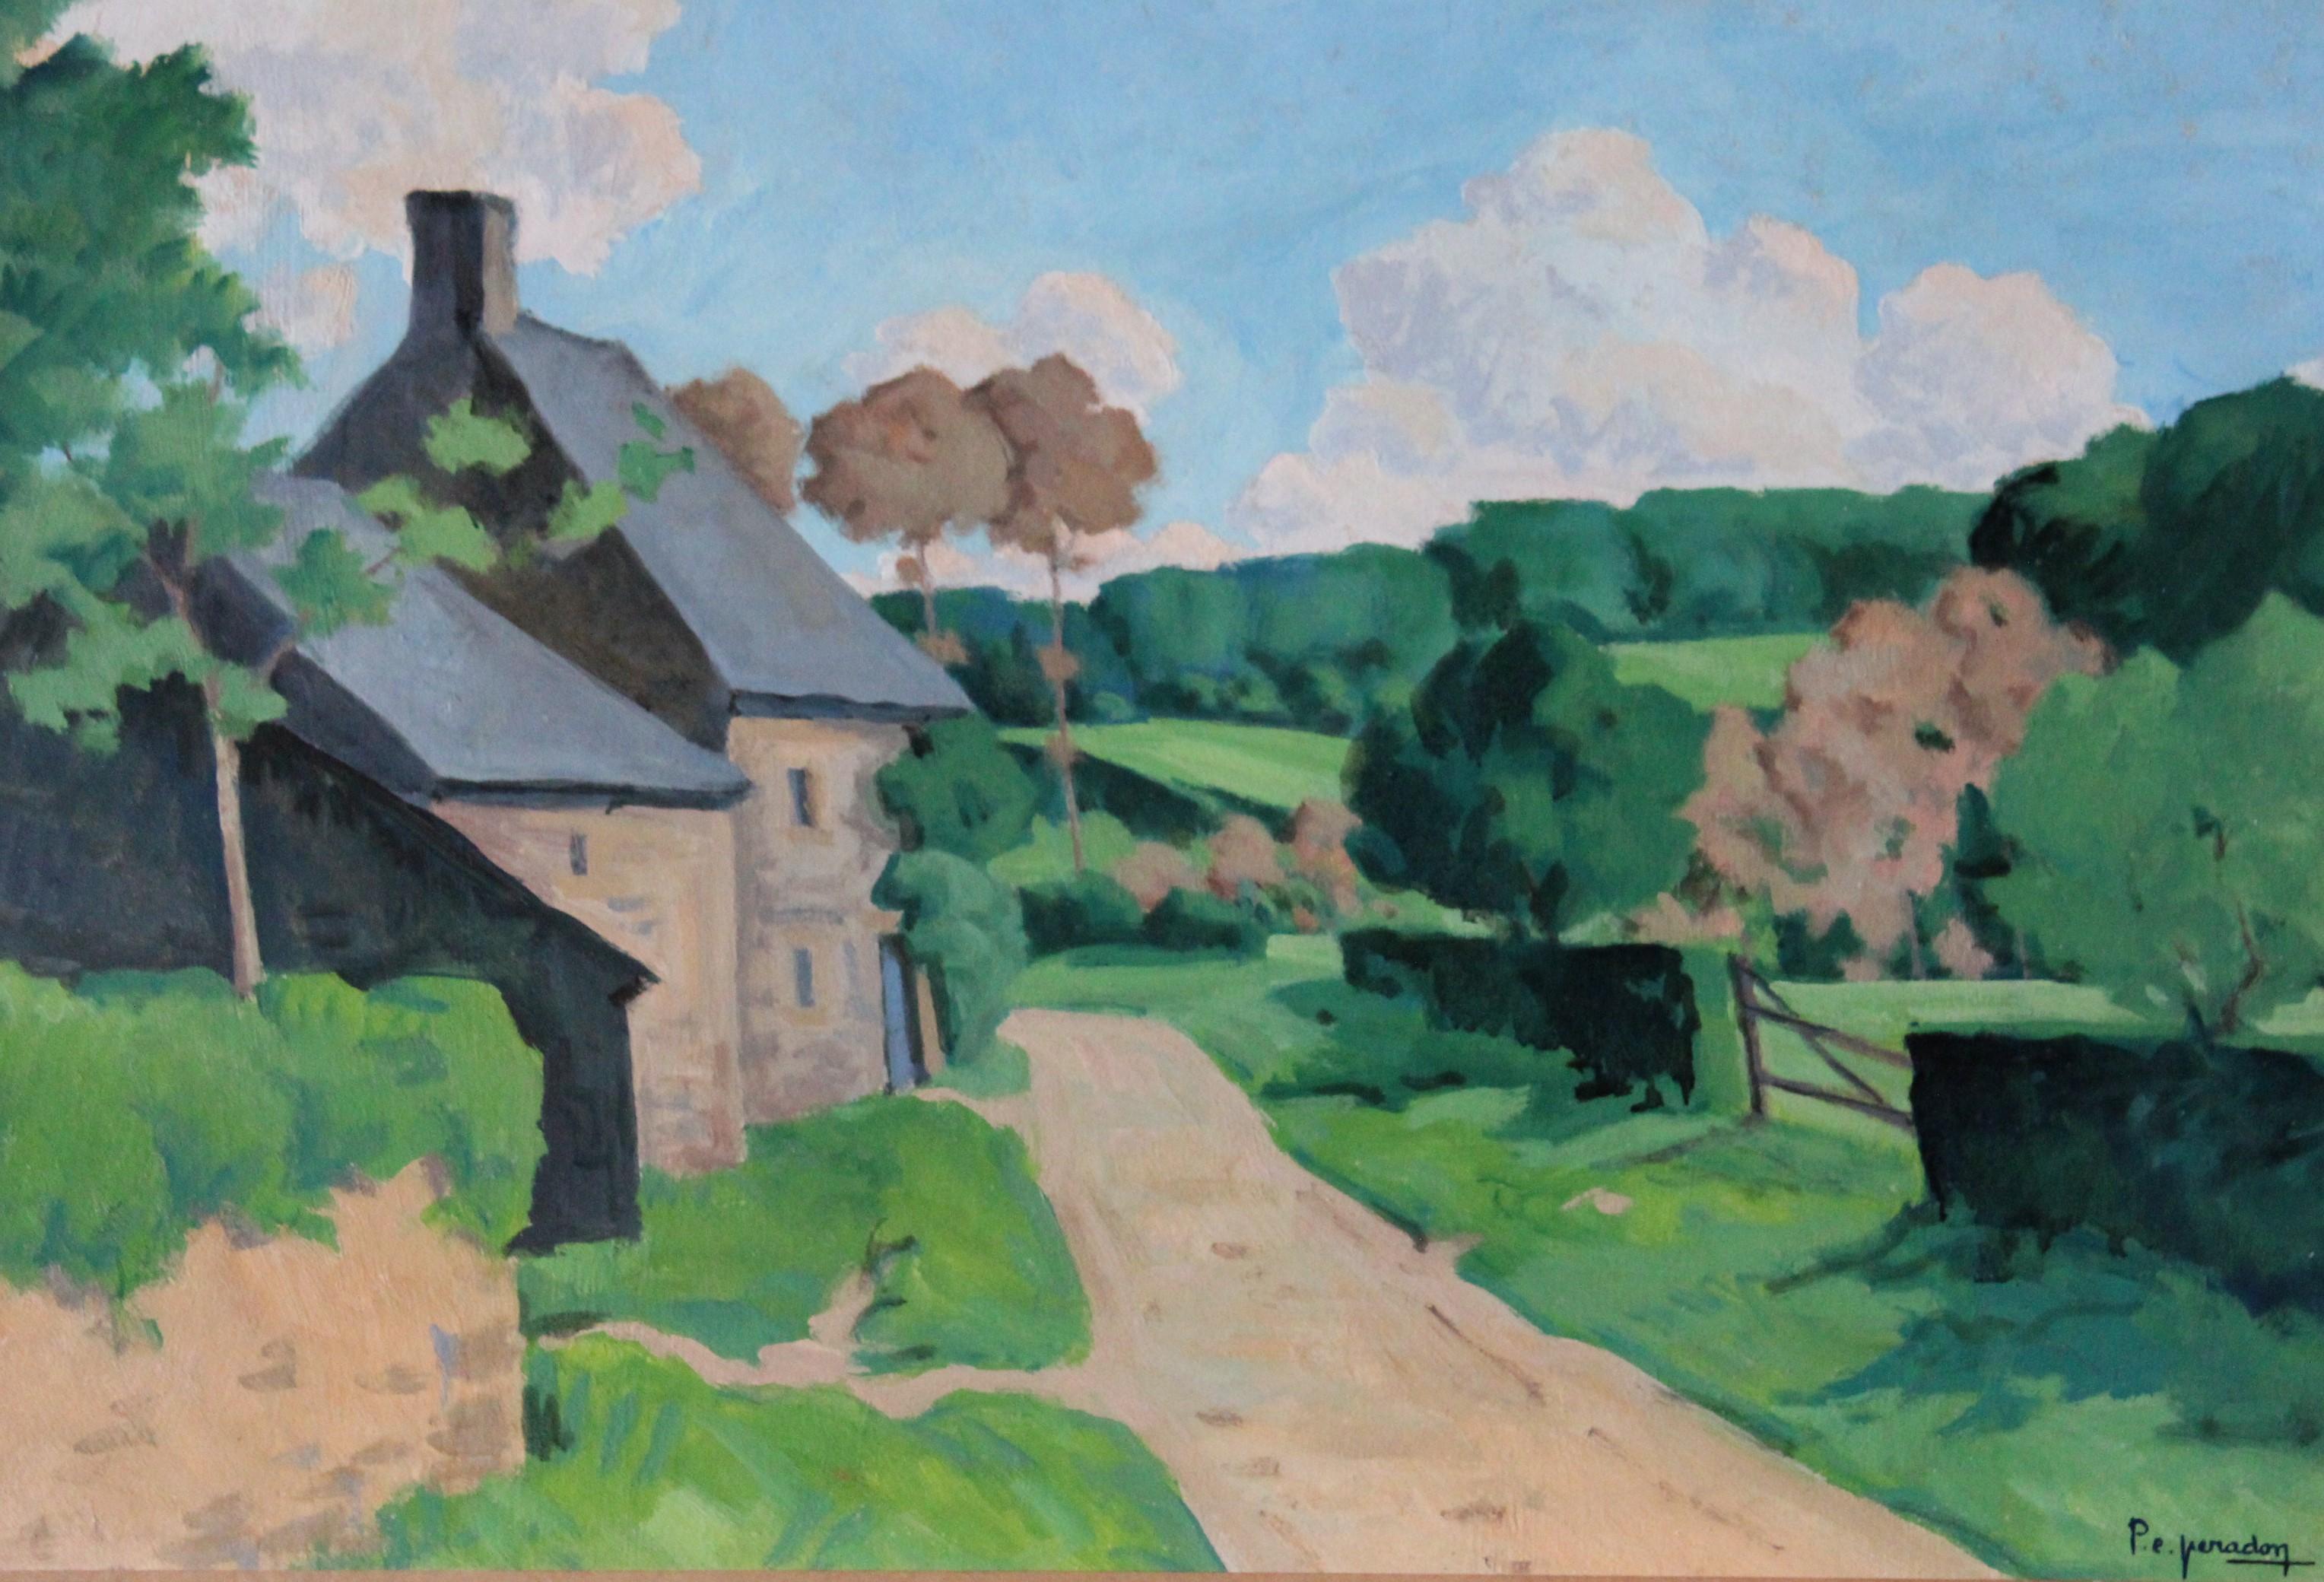 Pierre-Edmond Peradon Landscape Painting - Landscape Oil Painting, large French Landscape oil painting, Normandy landscape